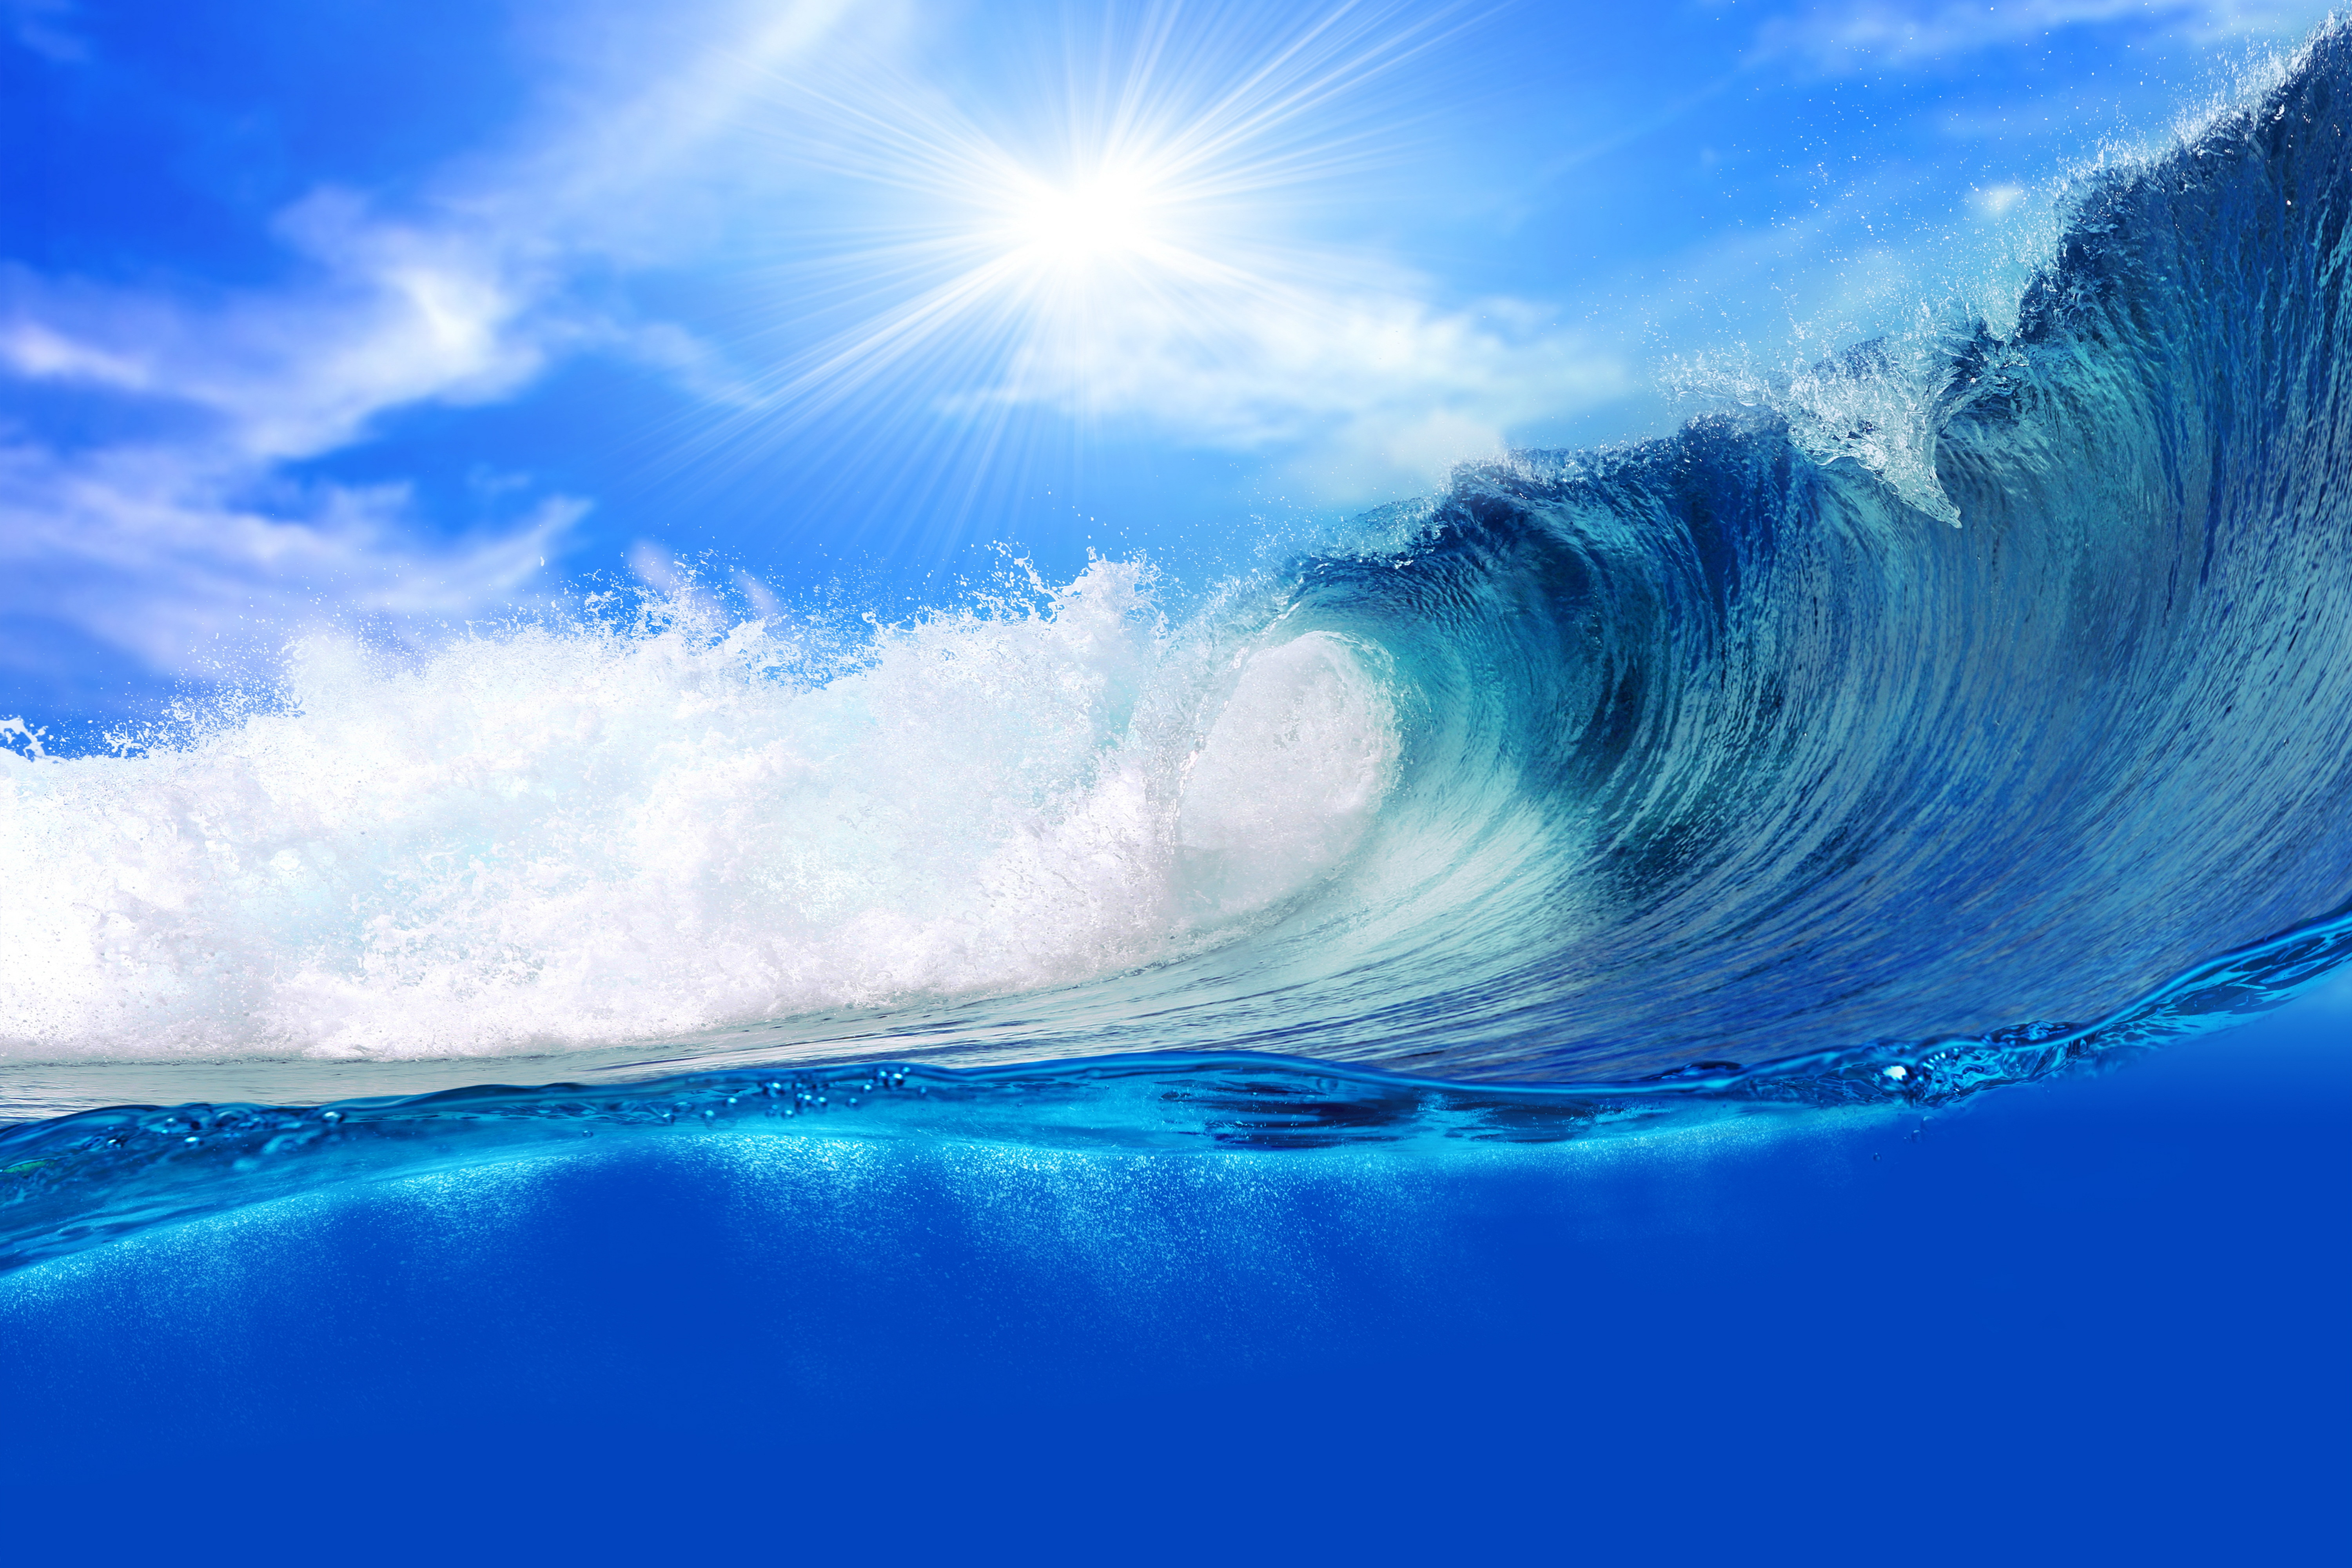 ola wallpaper,wave,wind wave,blue,sky,water